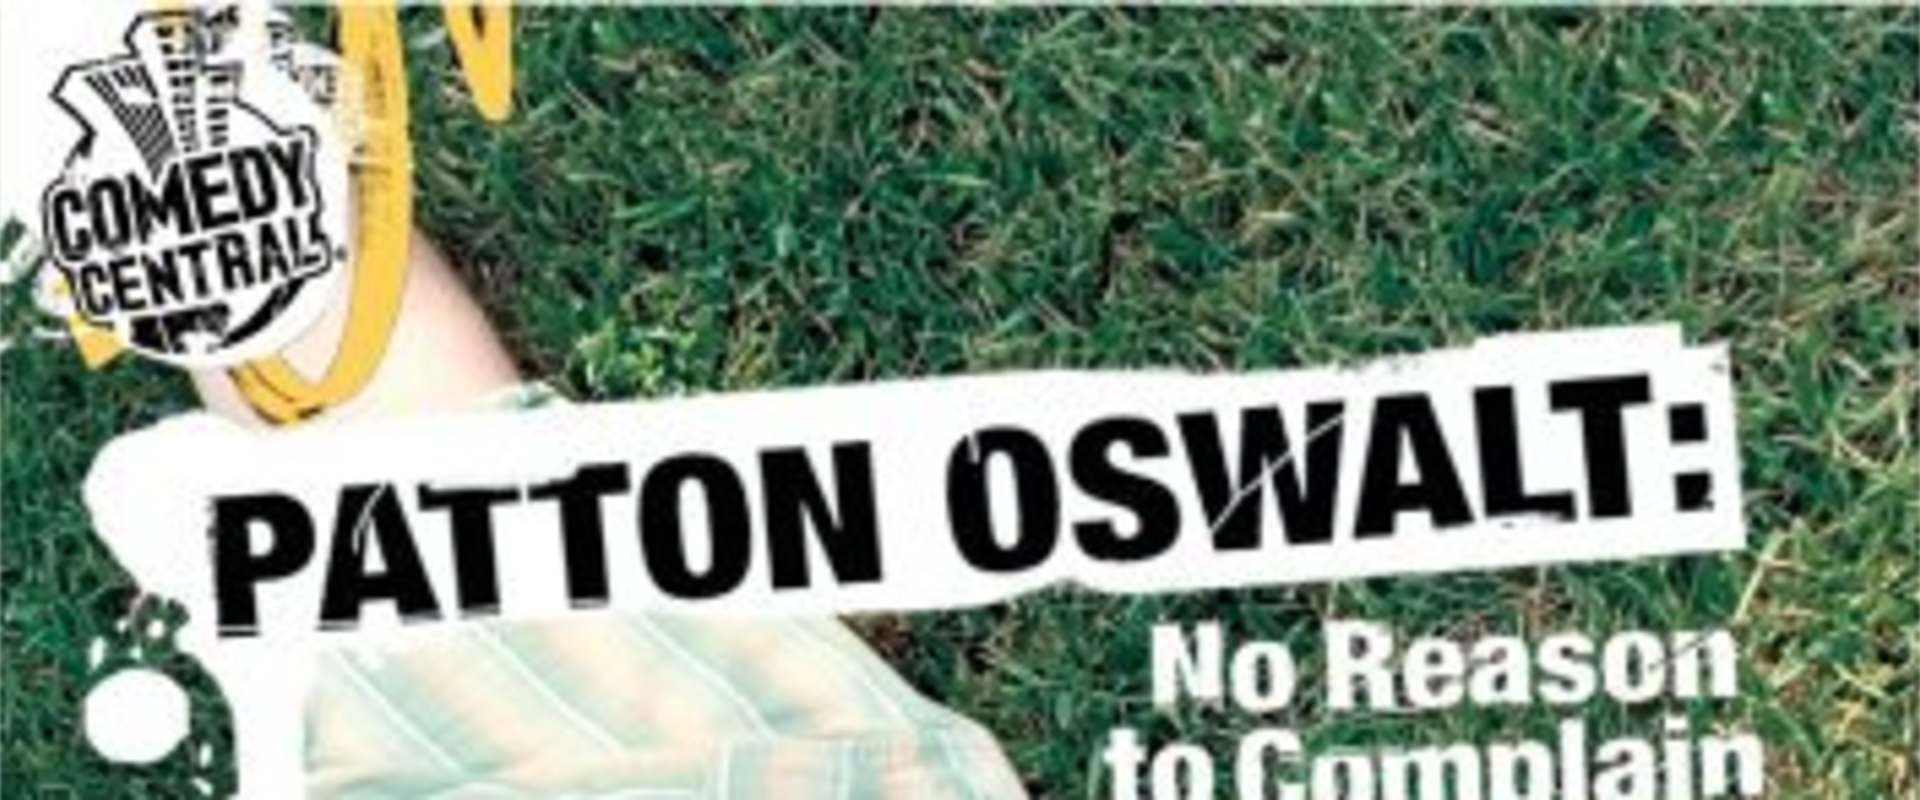 Patton Oswalt: No Reason to Complain background 1